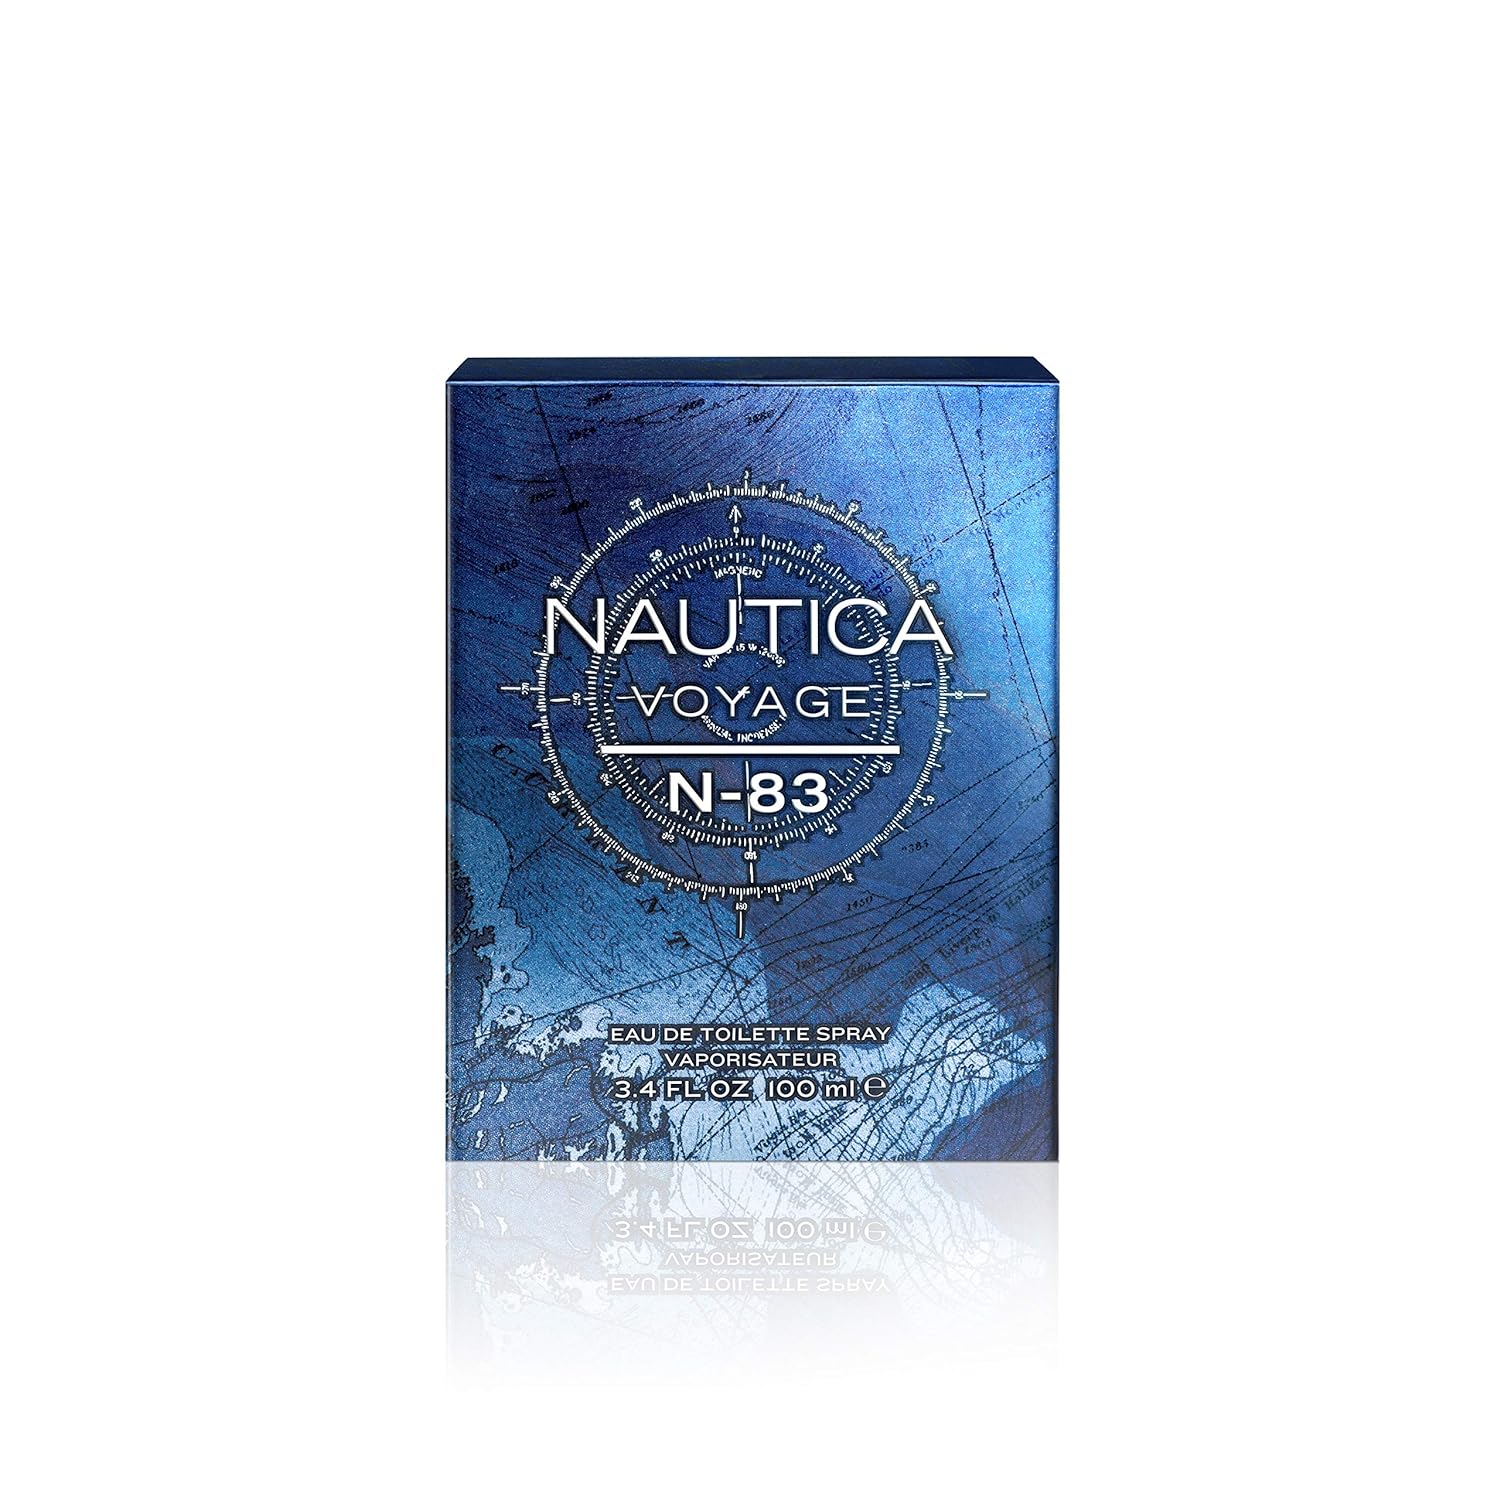 Nautica Voyage N-83 Eau de Toilette for Men, 3.4 Fl Oz